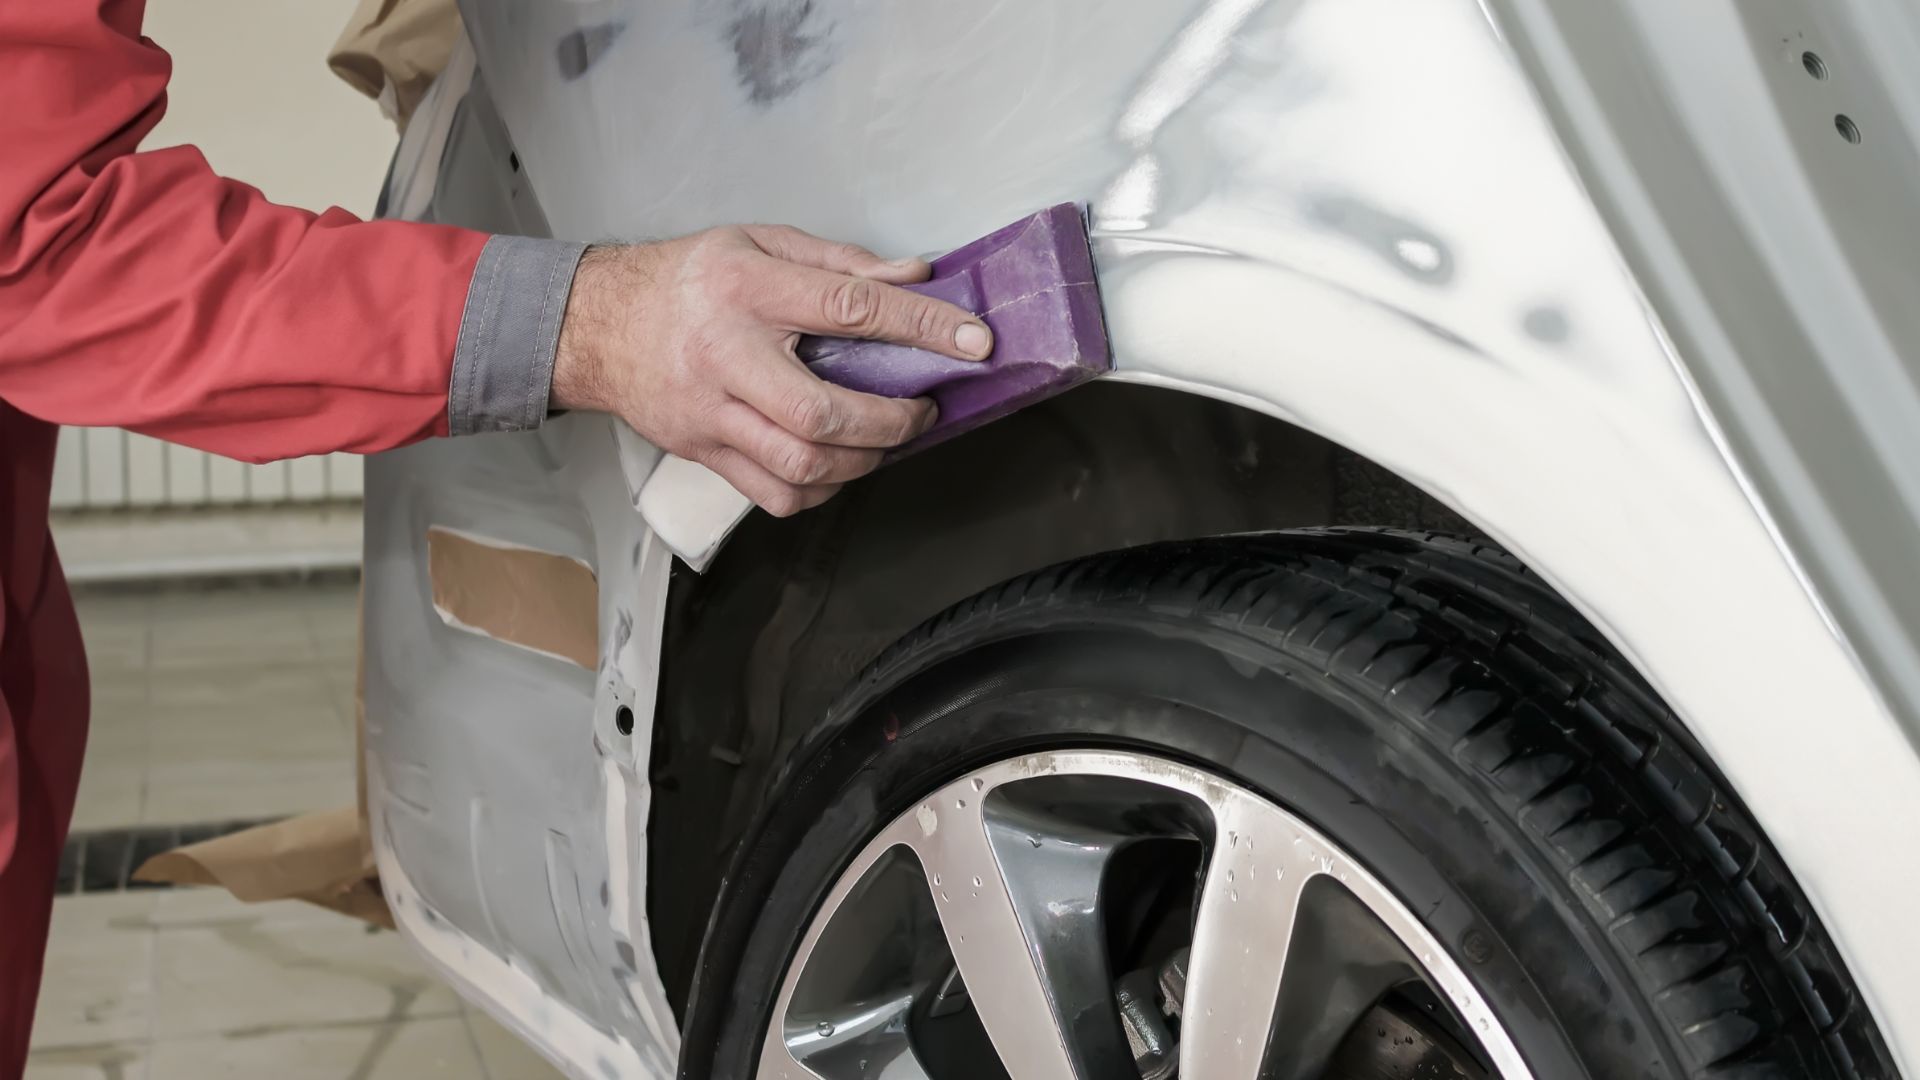 Brits putting off car repairs